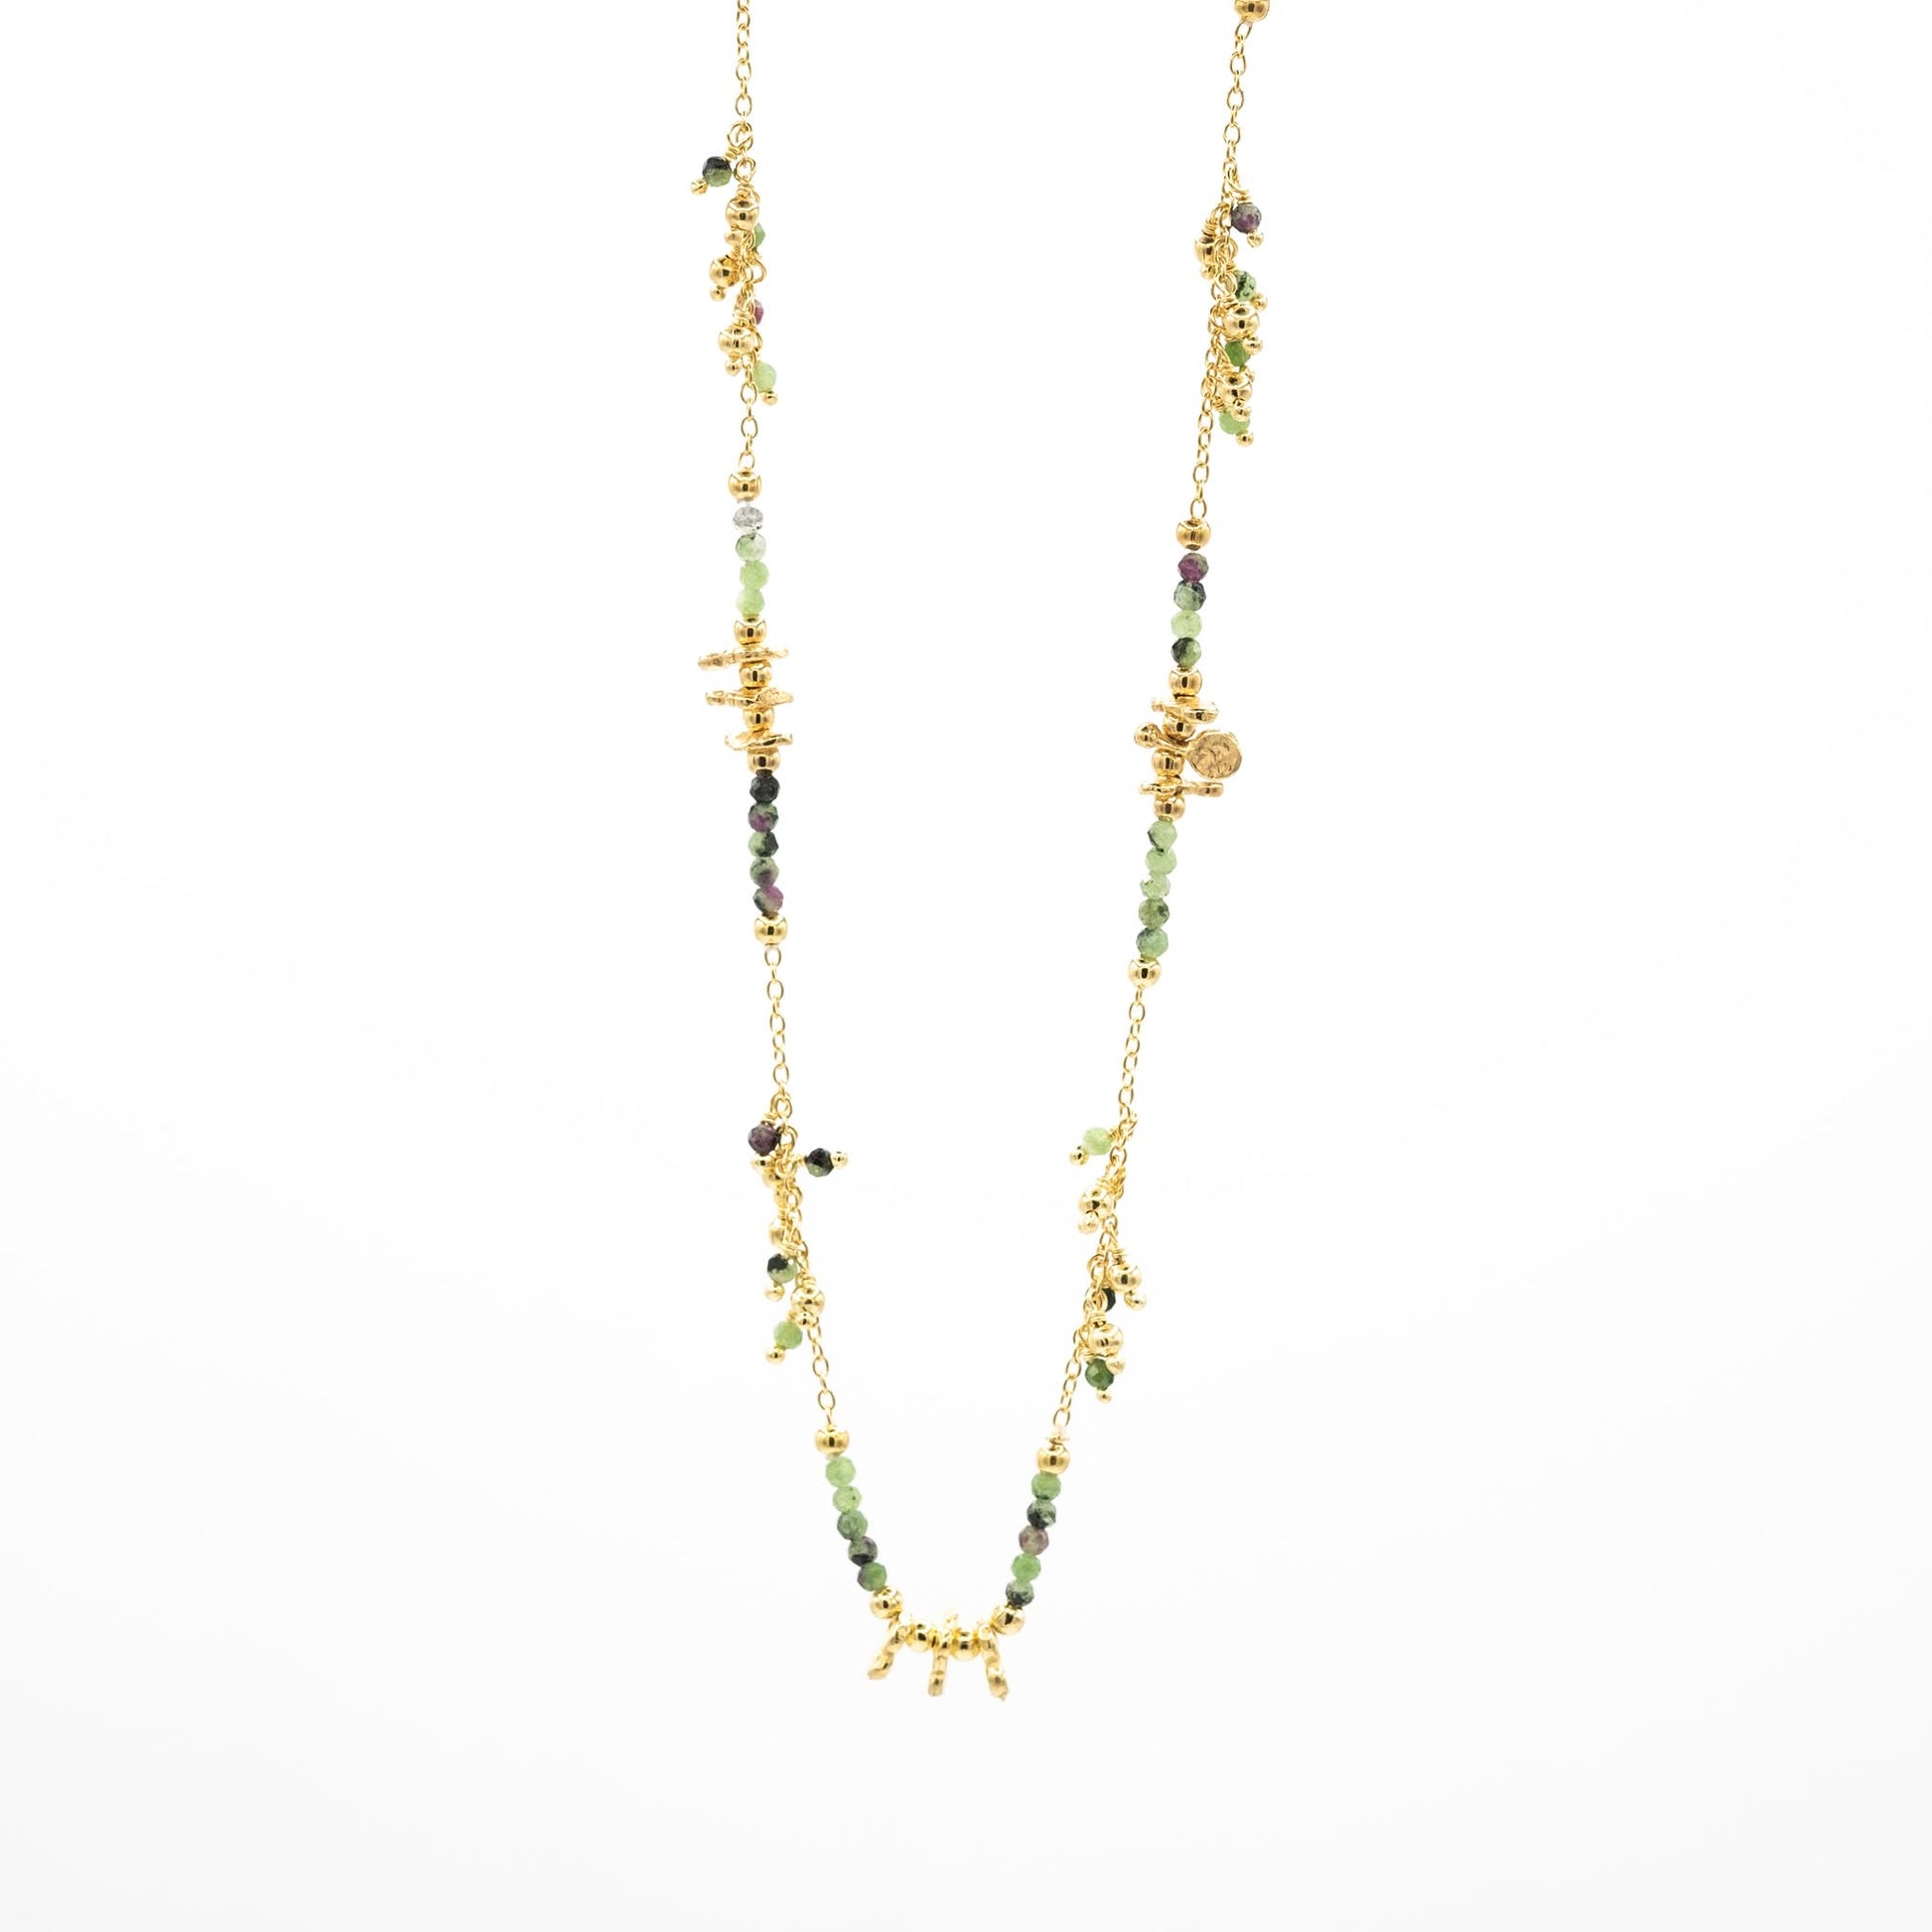 collier or vermeil pierre semi précieuse joaillerie création bijouterie paris bijoux femme